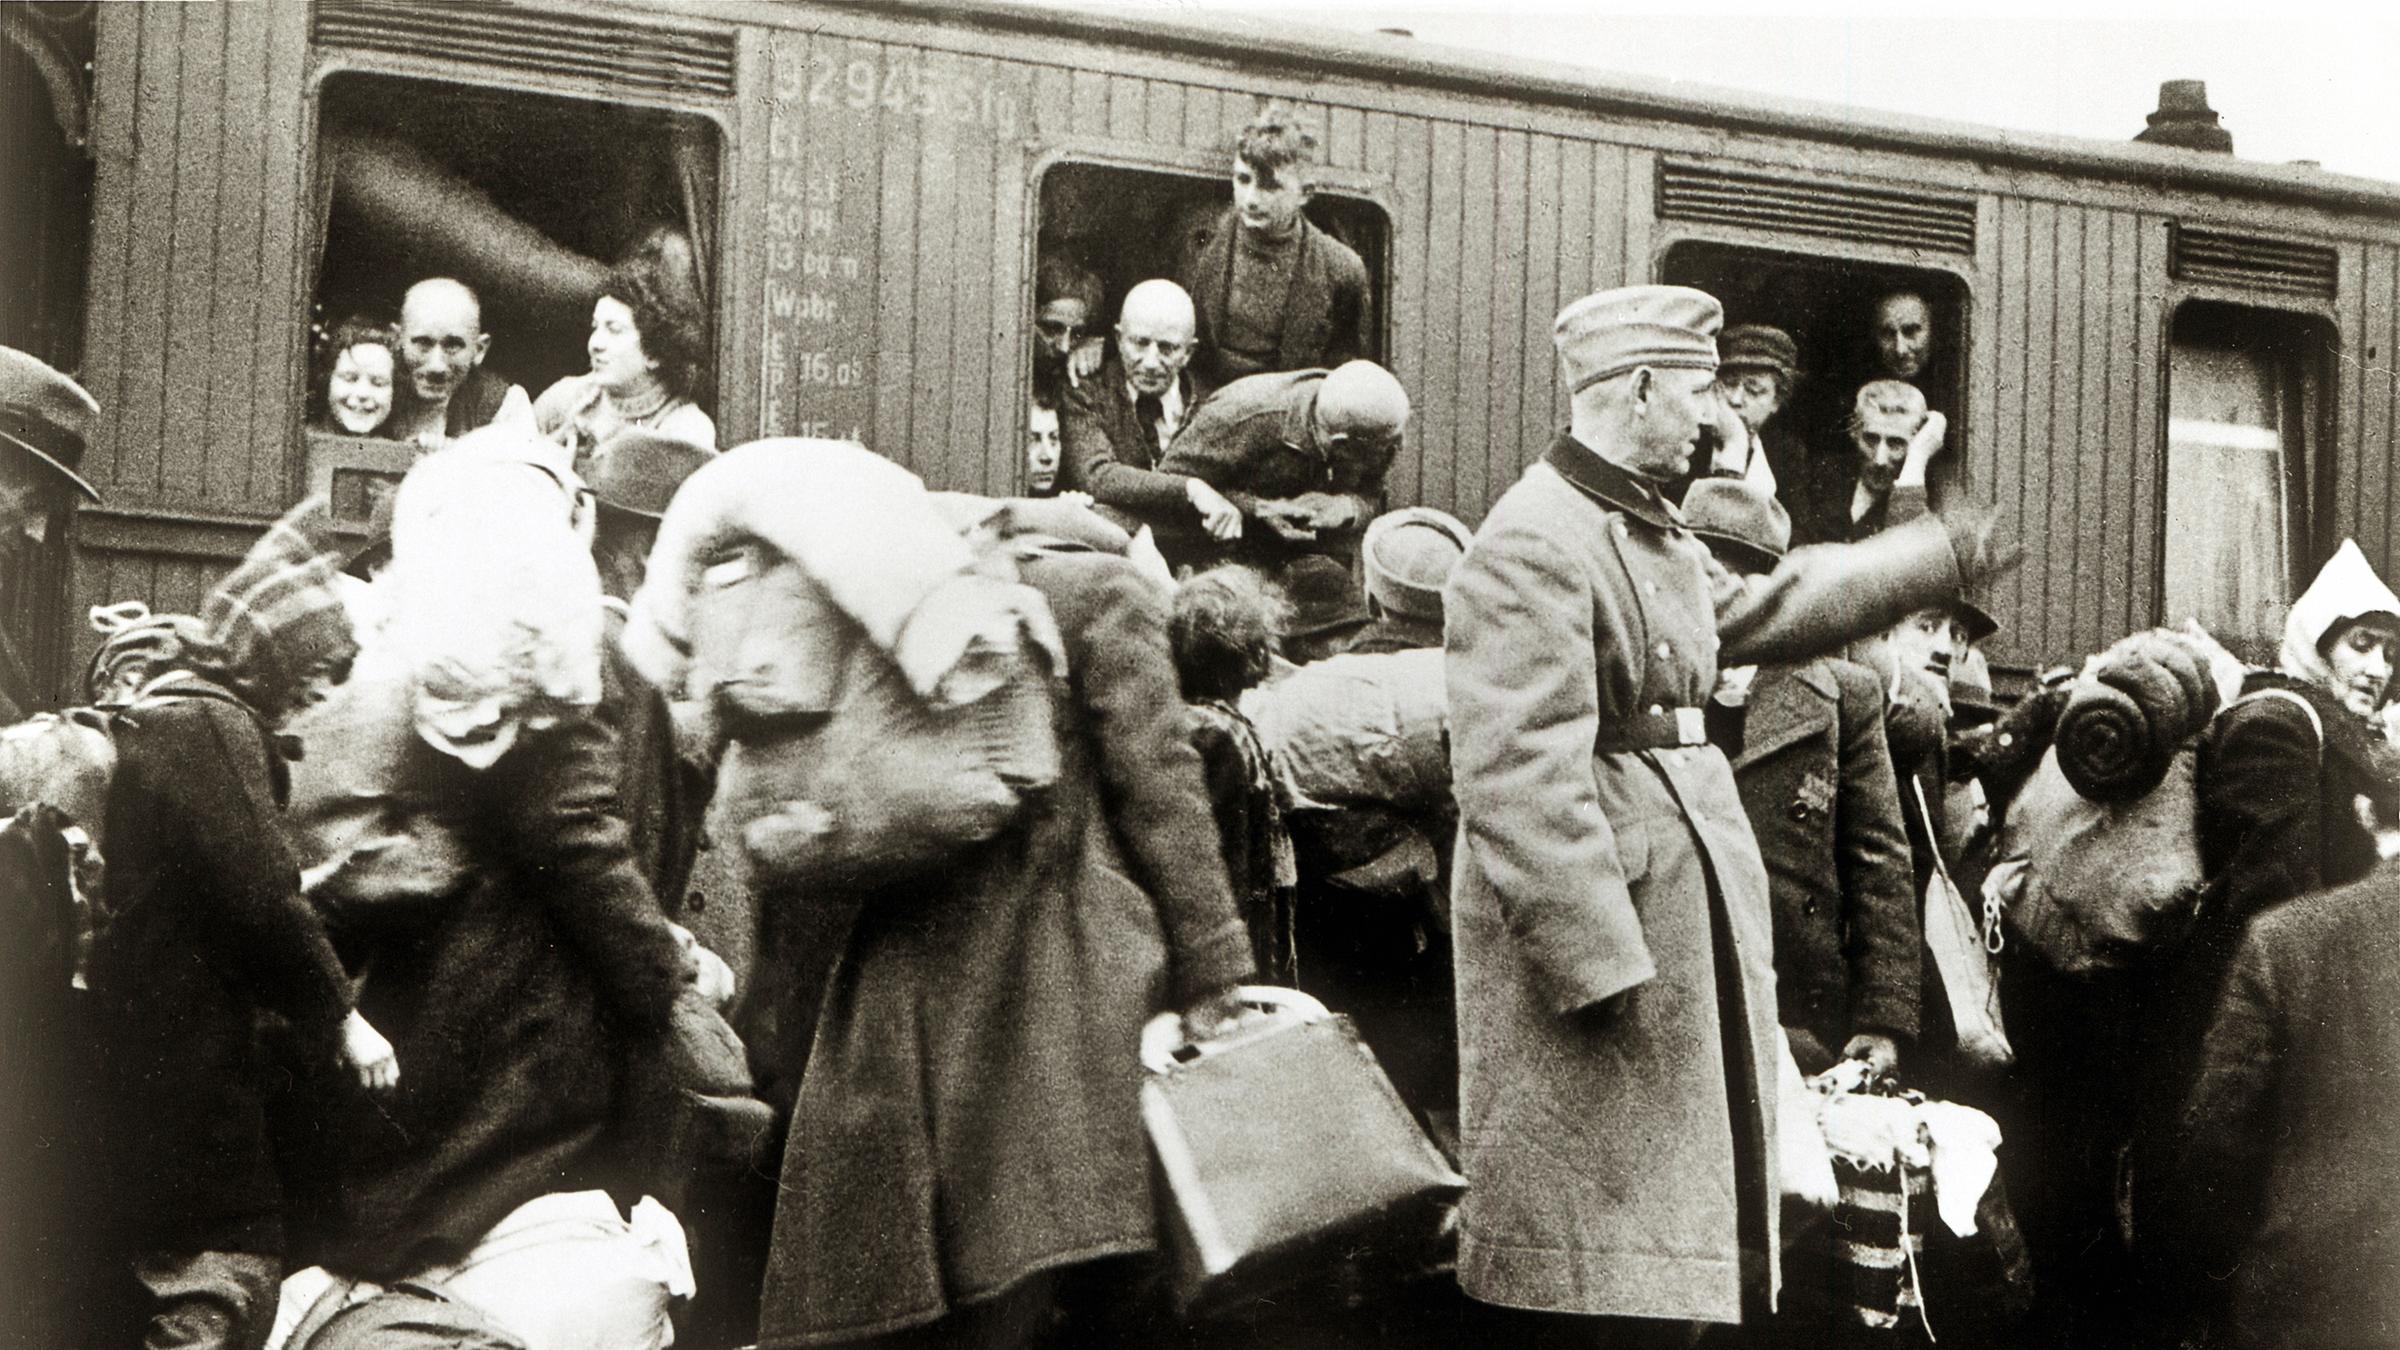 Historische Aufnahme von einem Zug voller Menschen. Deportation deutsch...</p>

                        <a href=